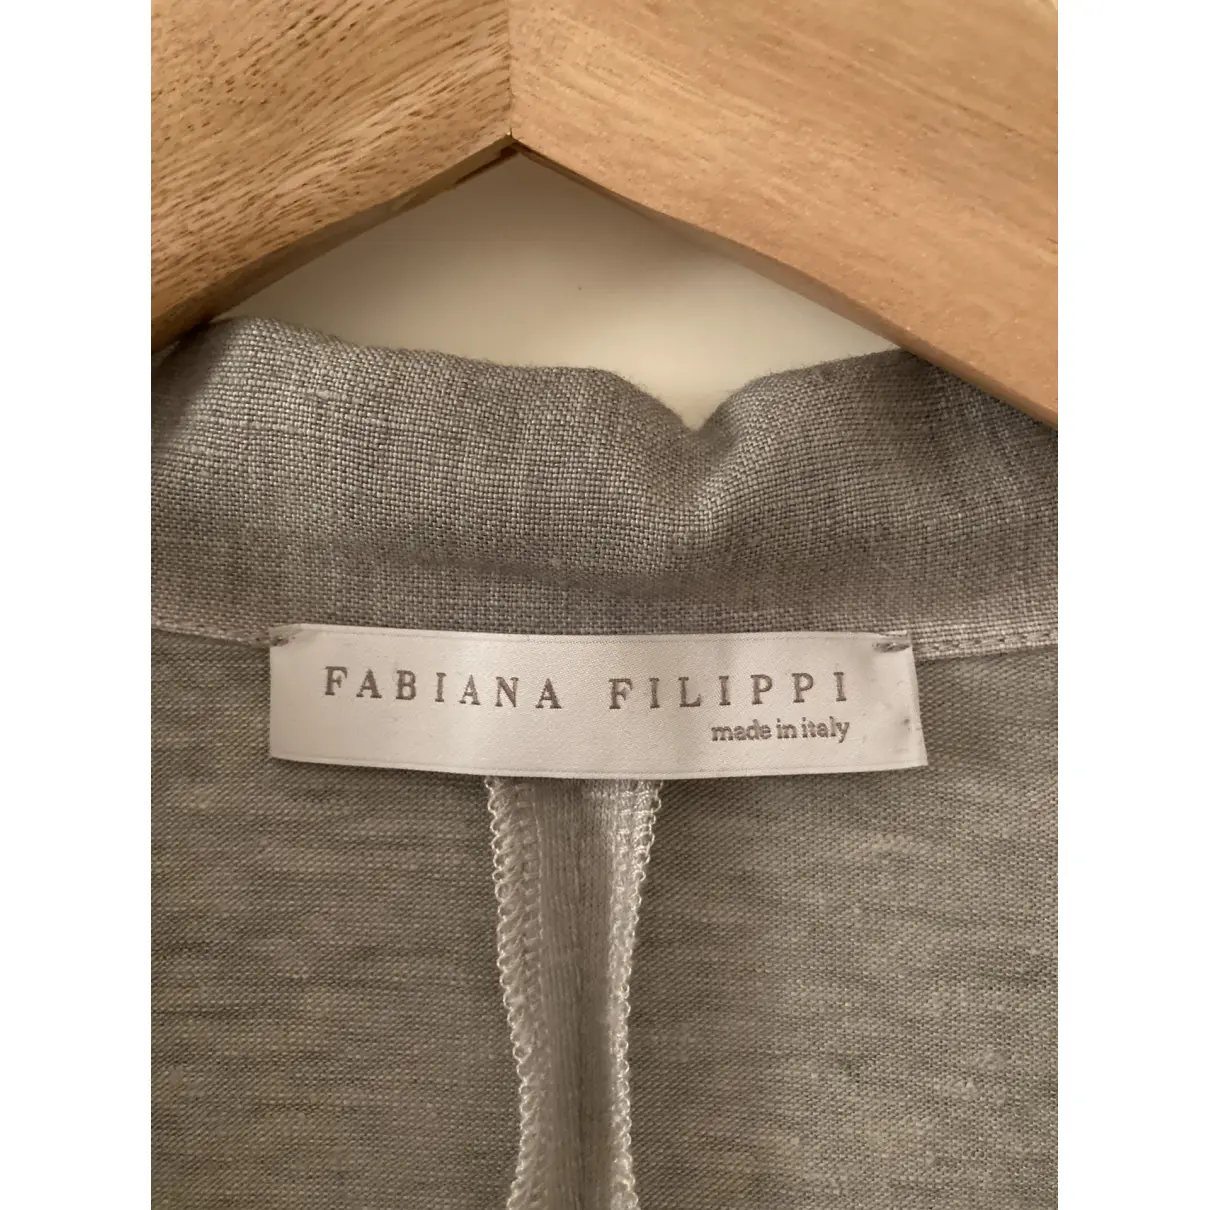 Buy Fabiana Filippi Linen blazer online